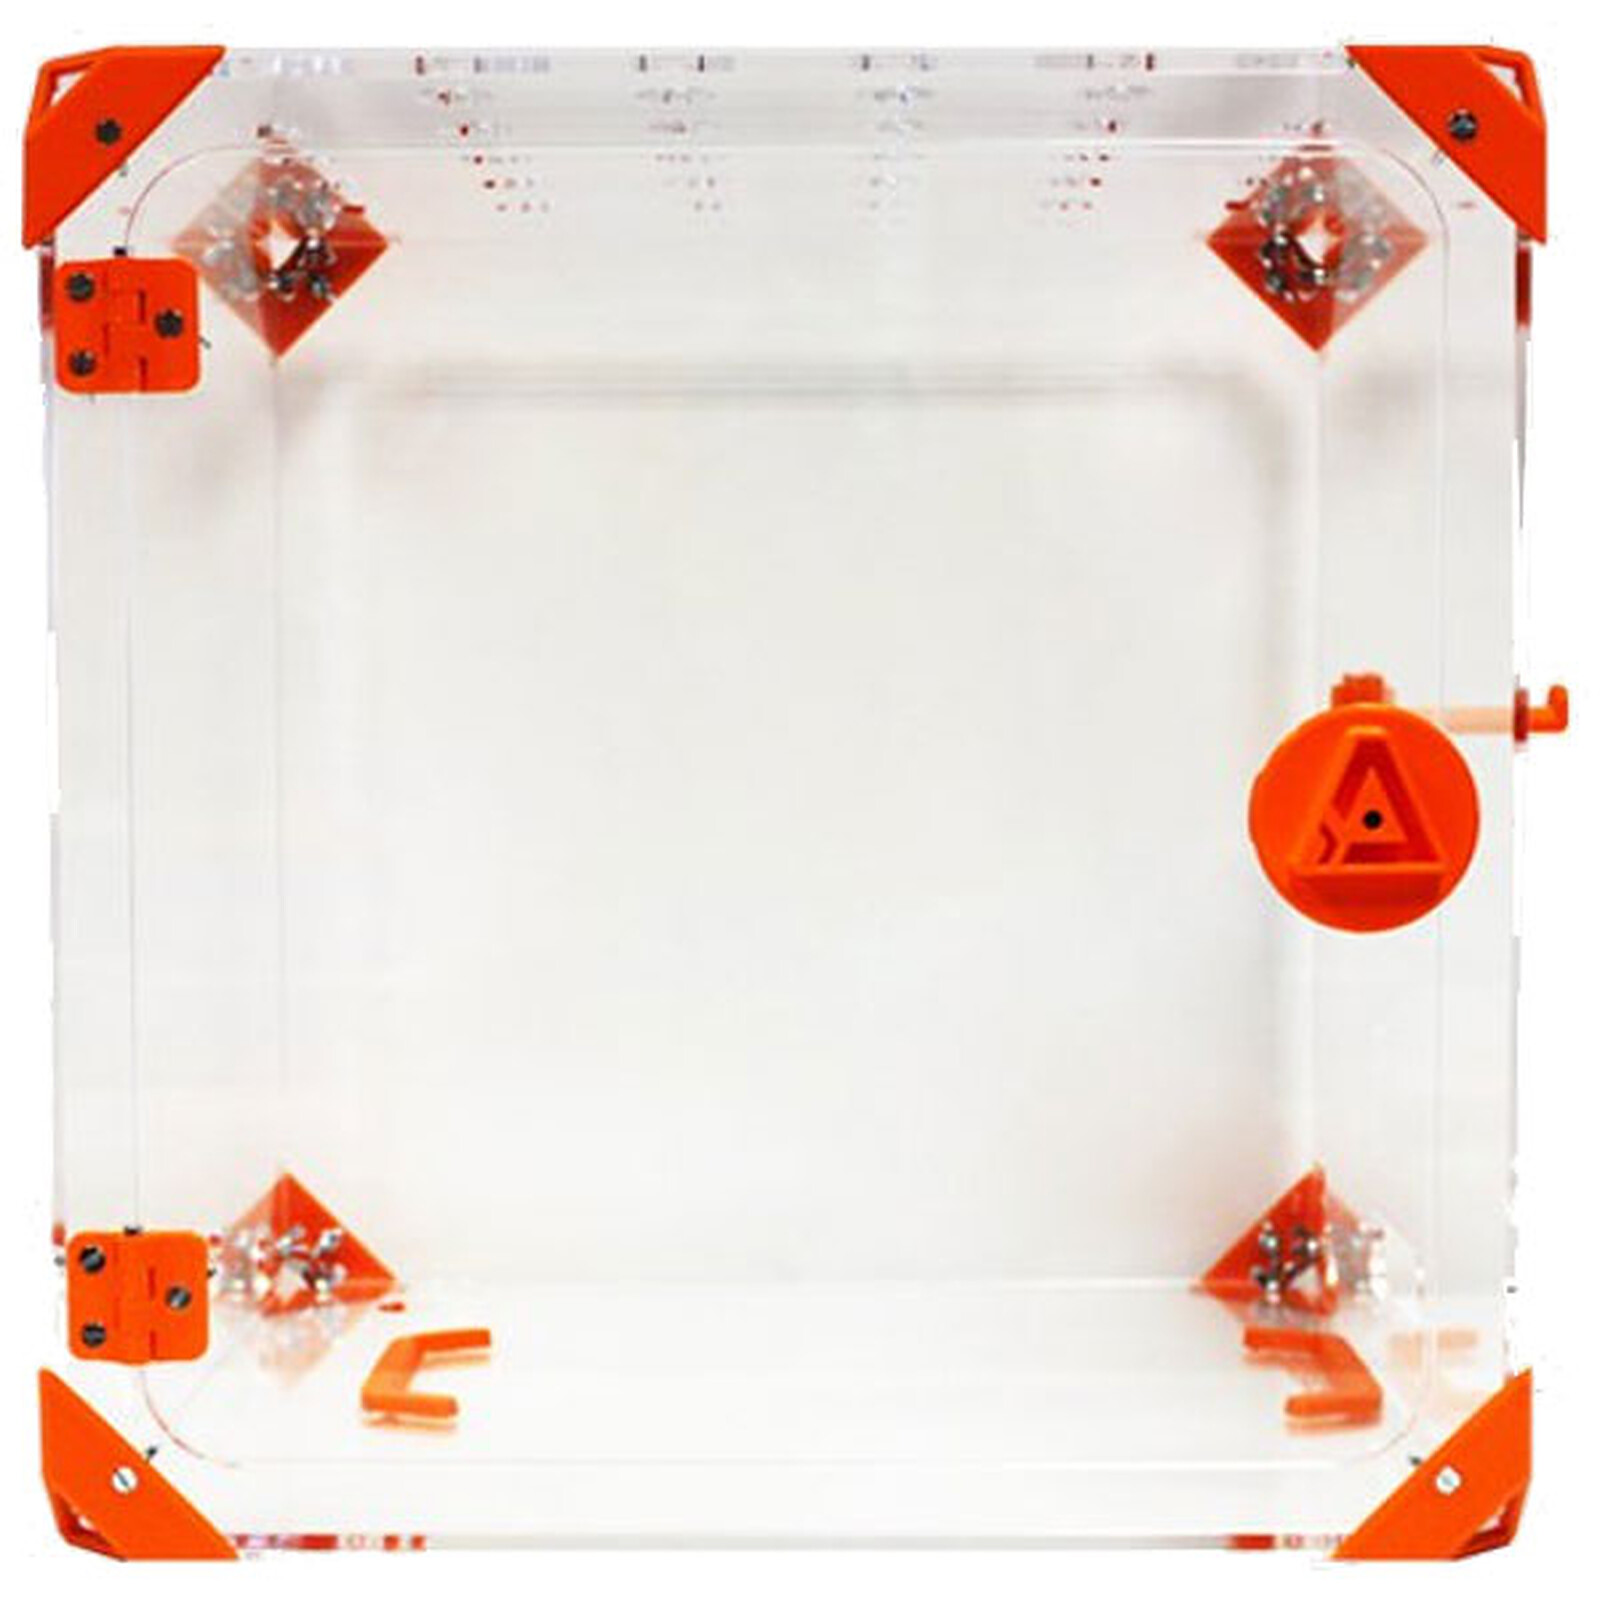 98 idées de Caisson 3D  caisson, imprimante 3d, imprimante